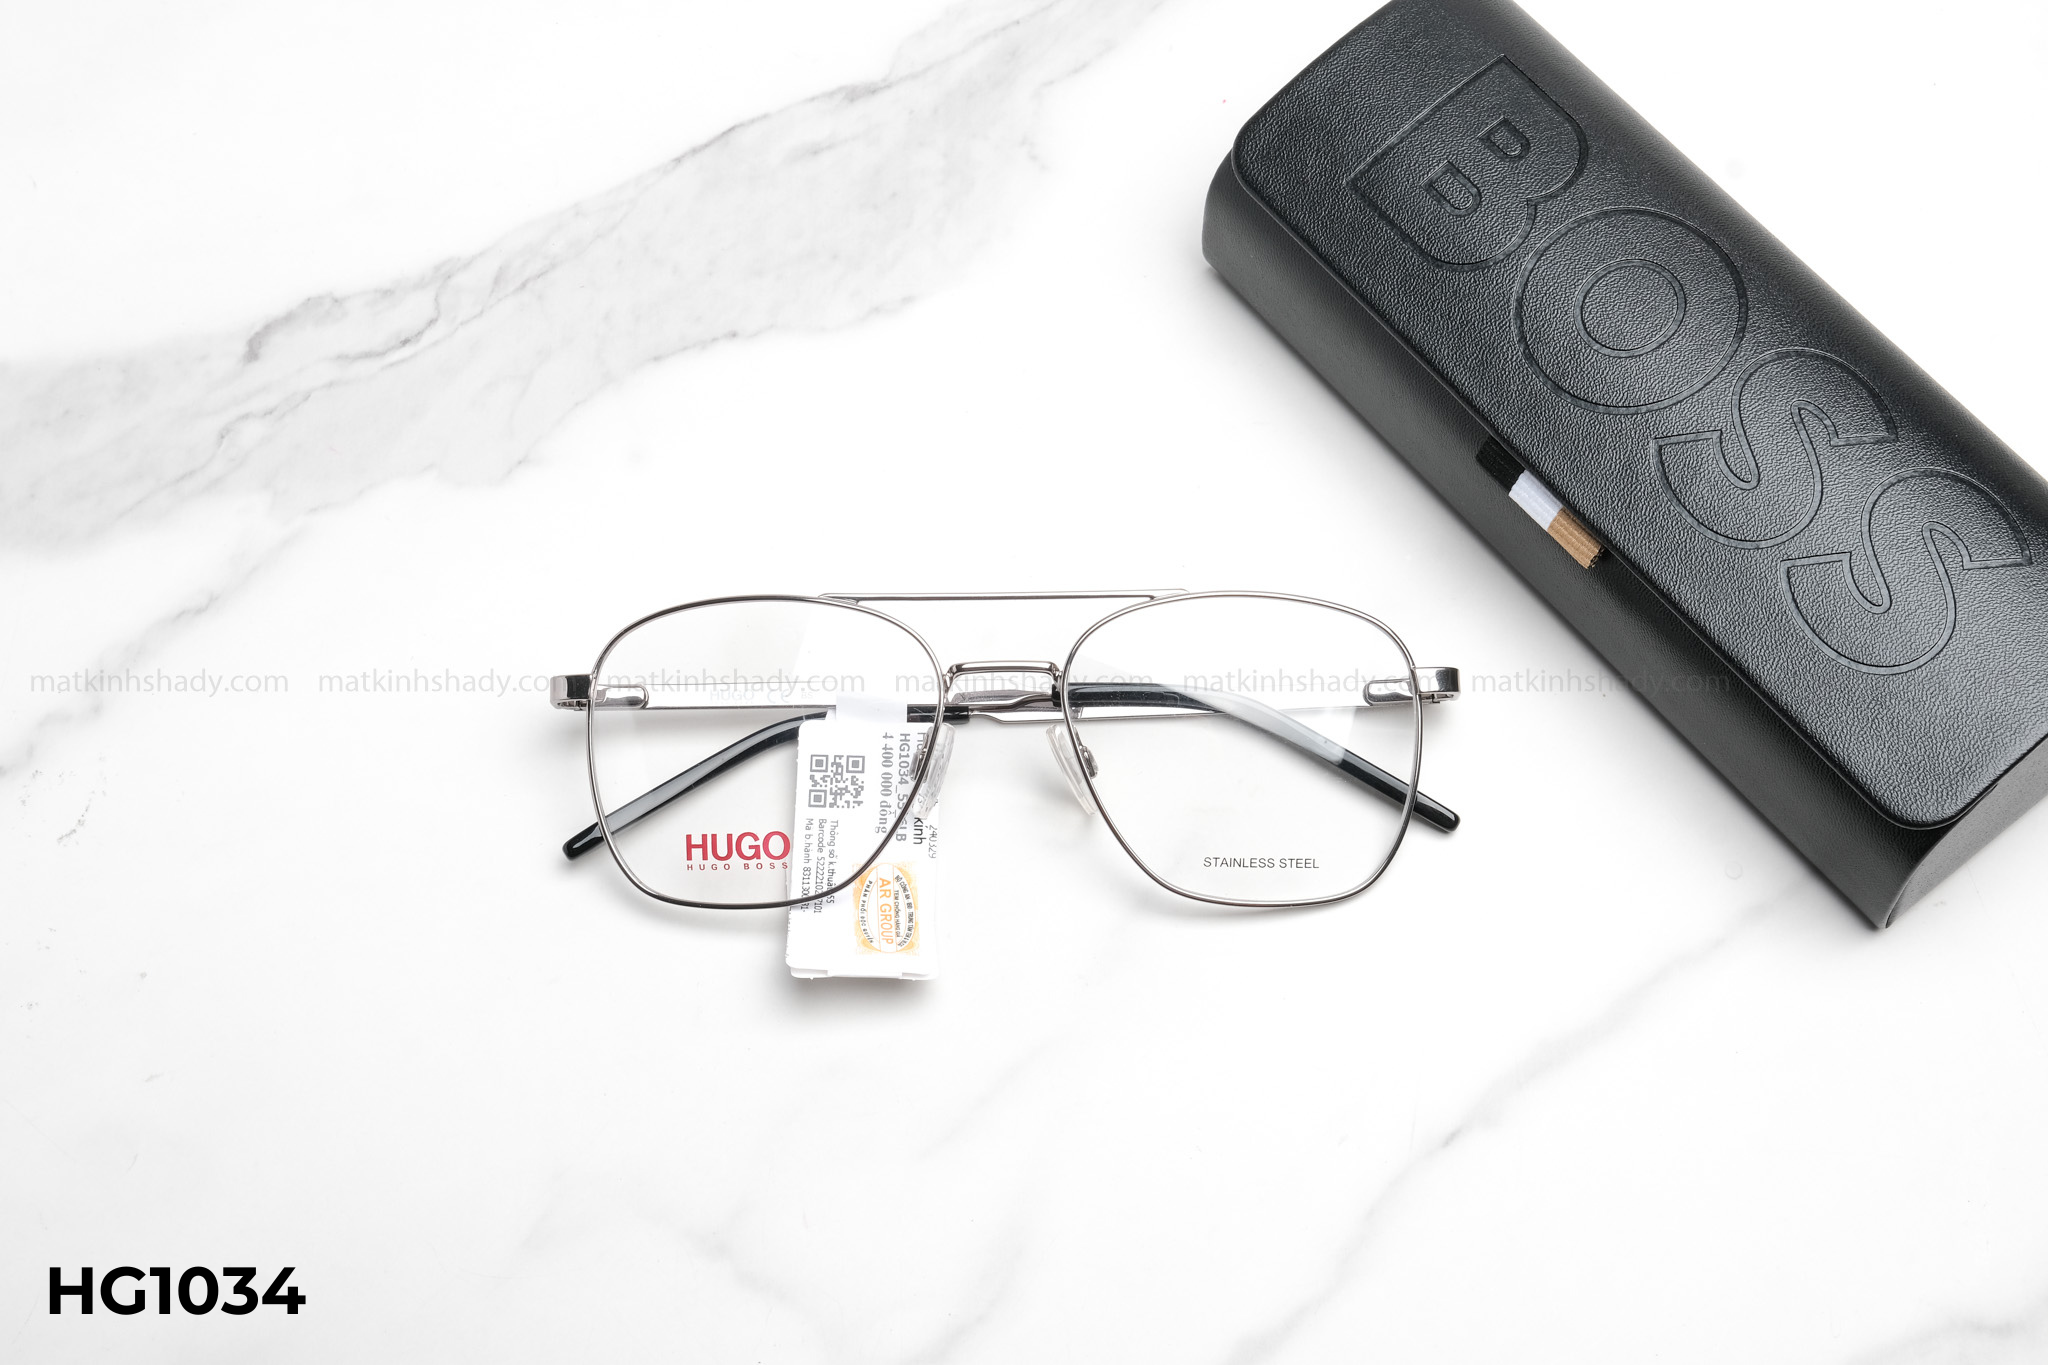  Hugo Boss Eyewear - Glasses - HG1034 